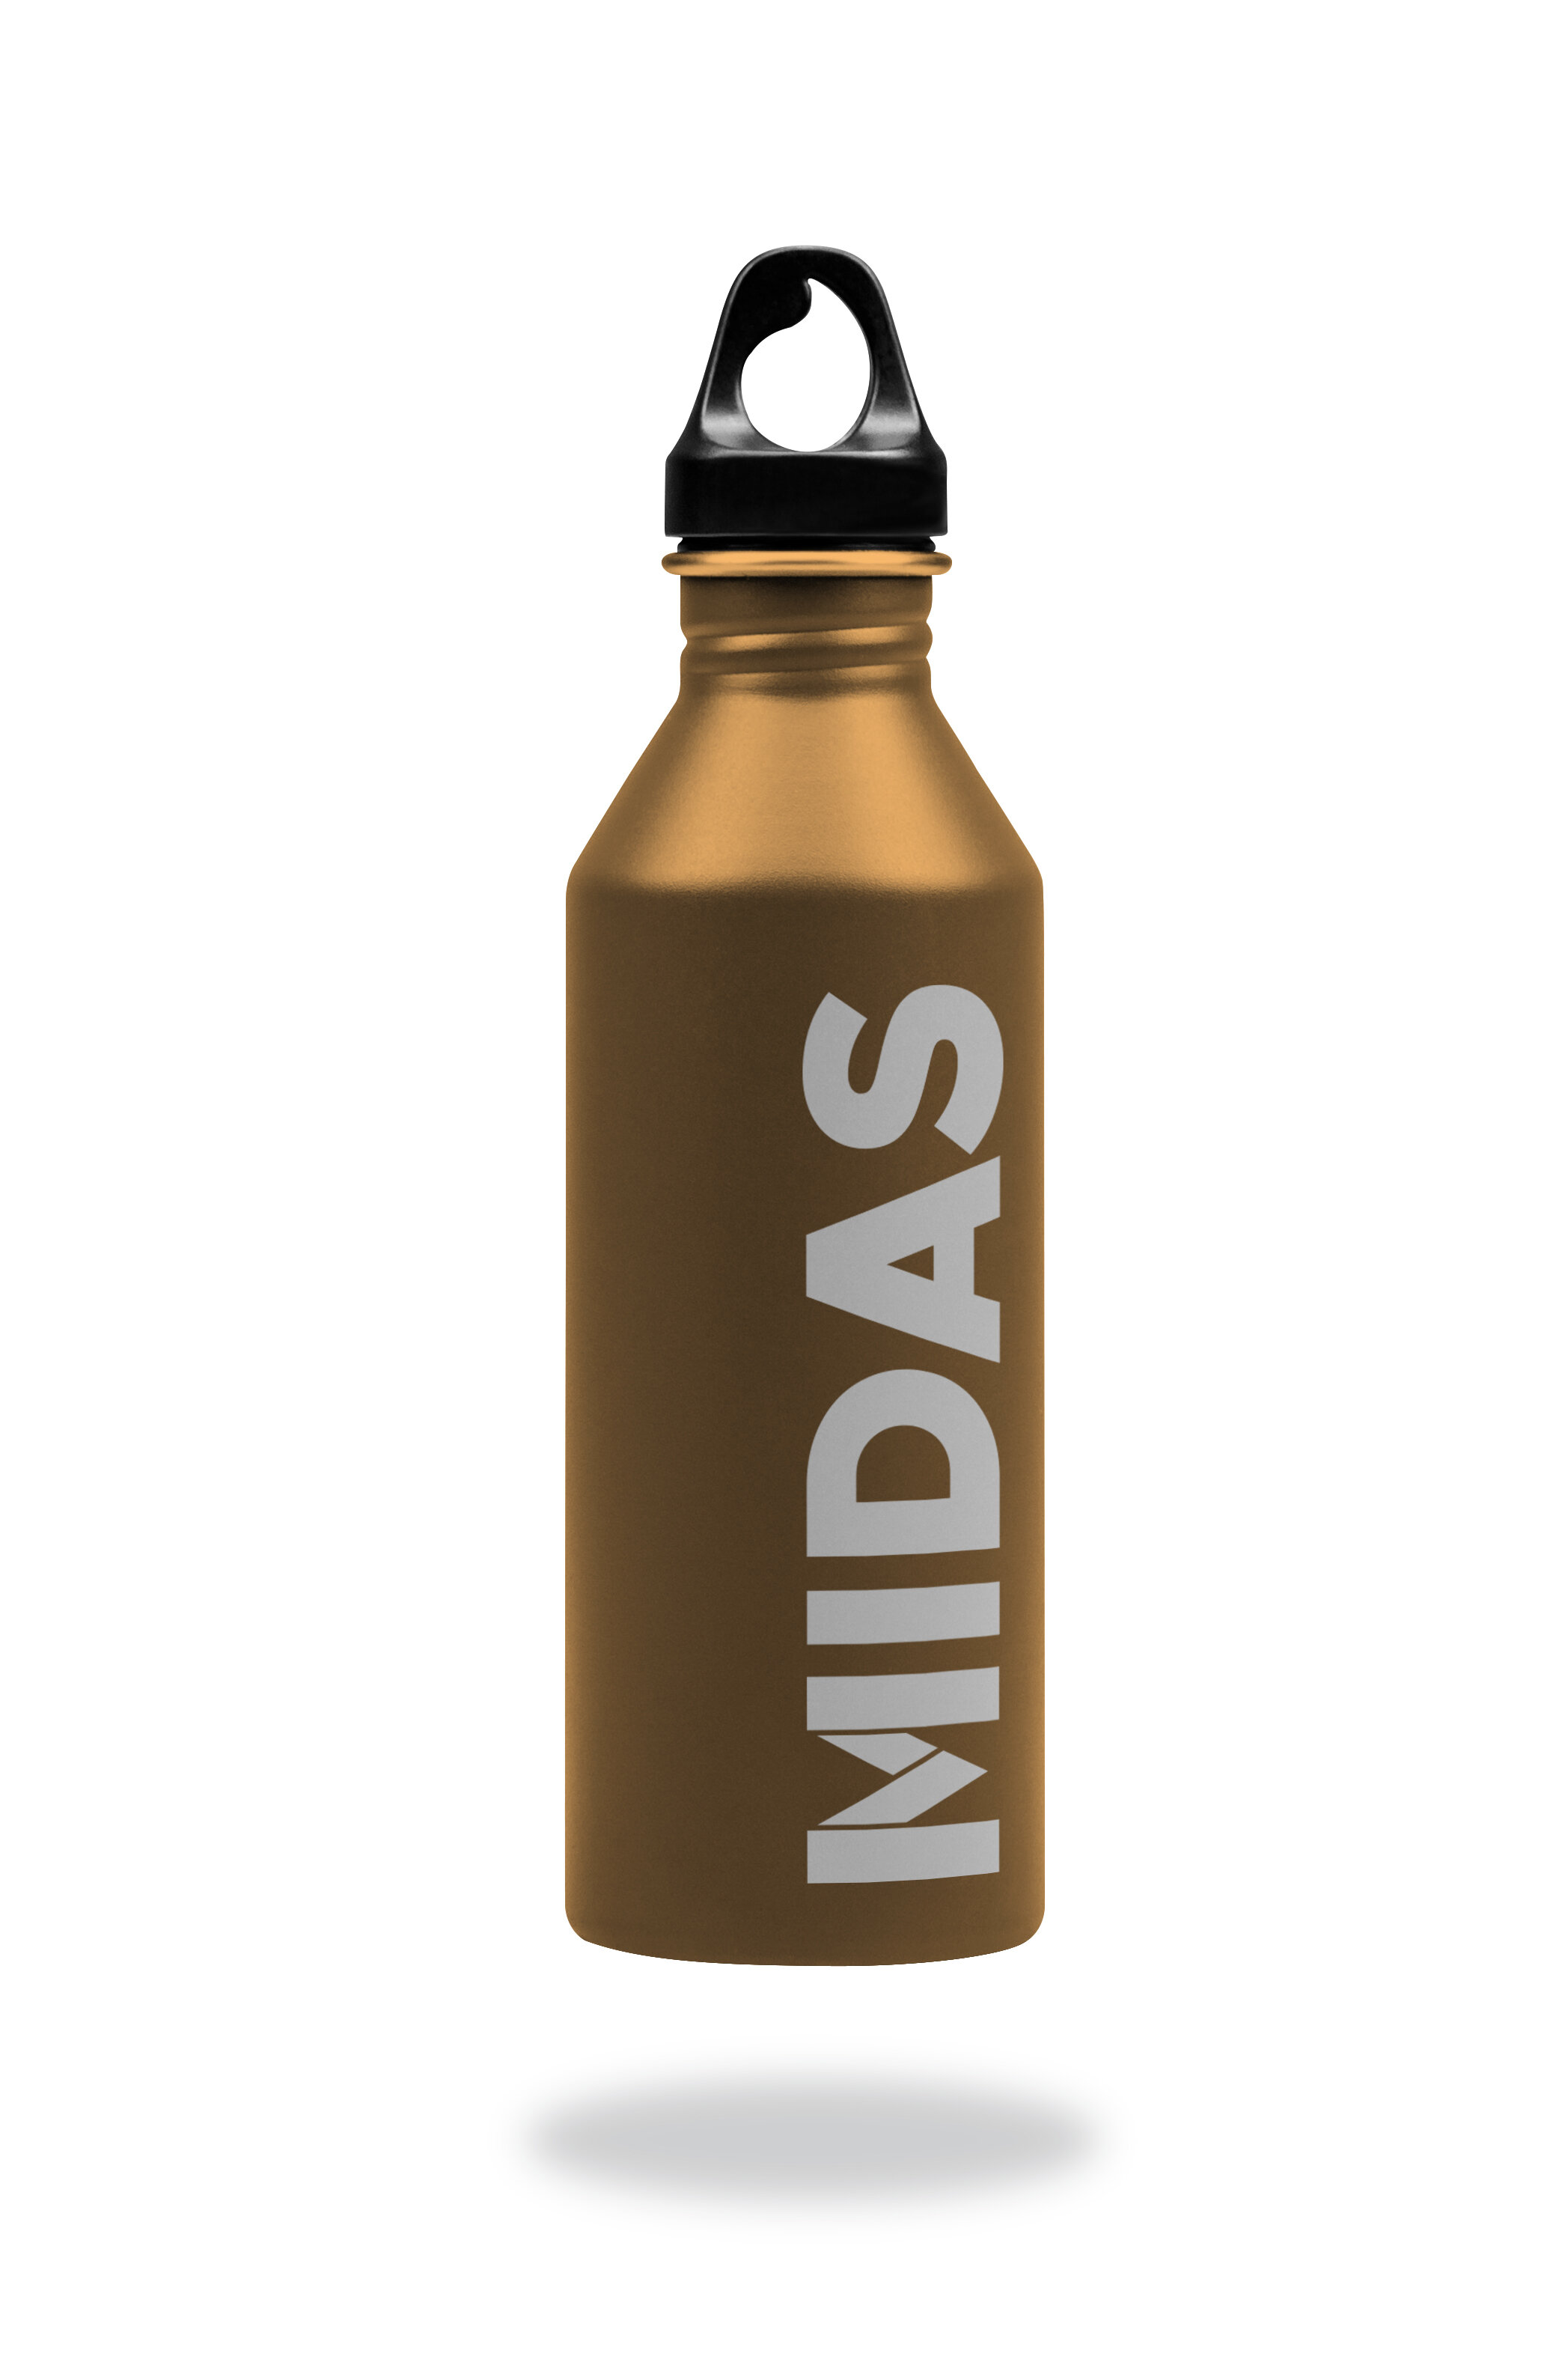 Midas_water_bottle_01.jpg